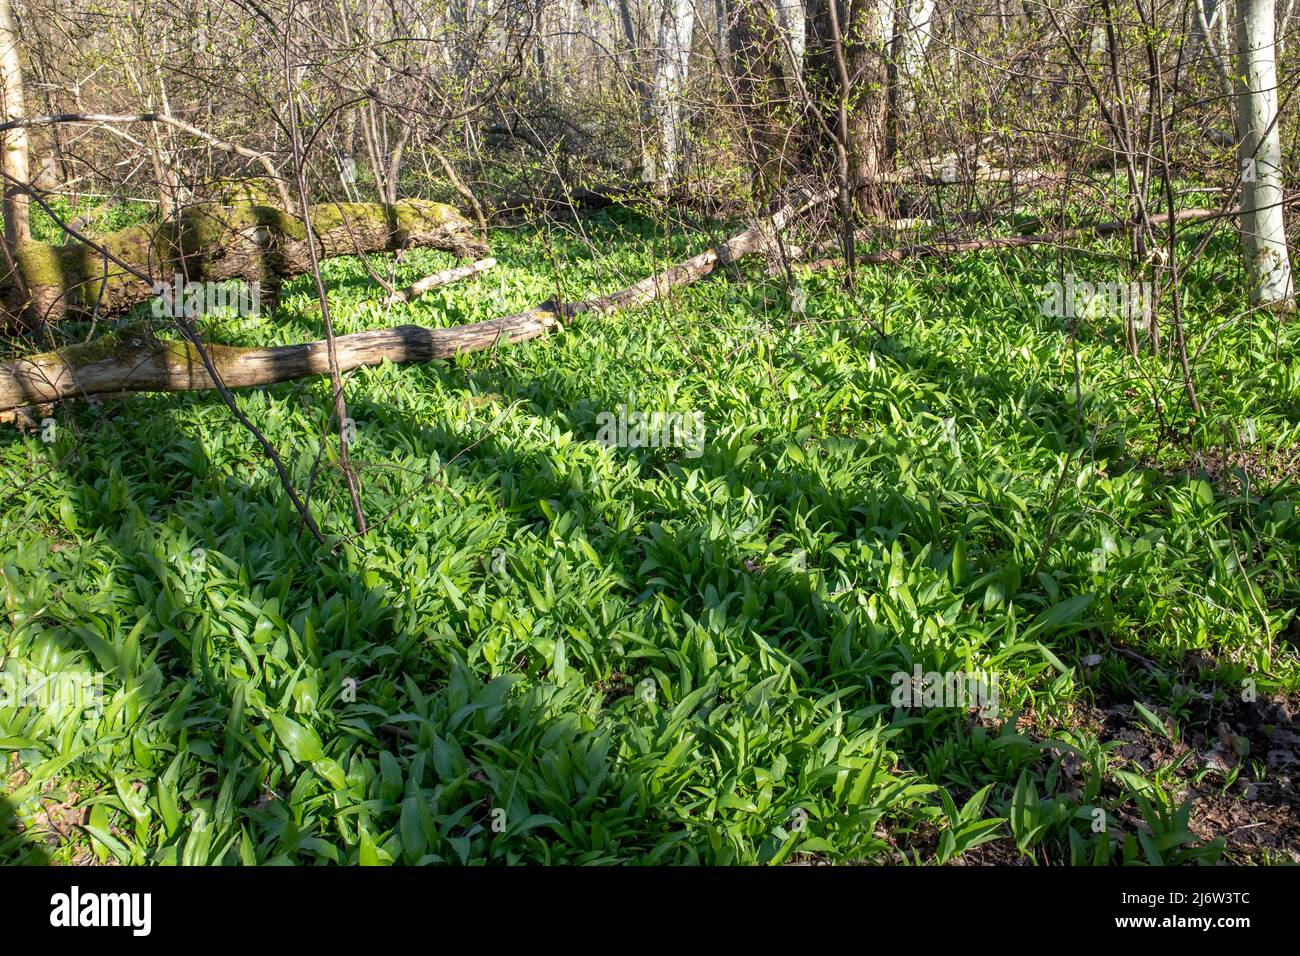 Ajo salvaje, Allium ursinum exuberantes hojas verdes que crecen en el bosque a principios de la primavera en Estonia. Planta comestible aromática y sabrosa, utilizada para la alimentación. Foto de stock